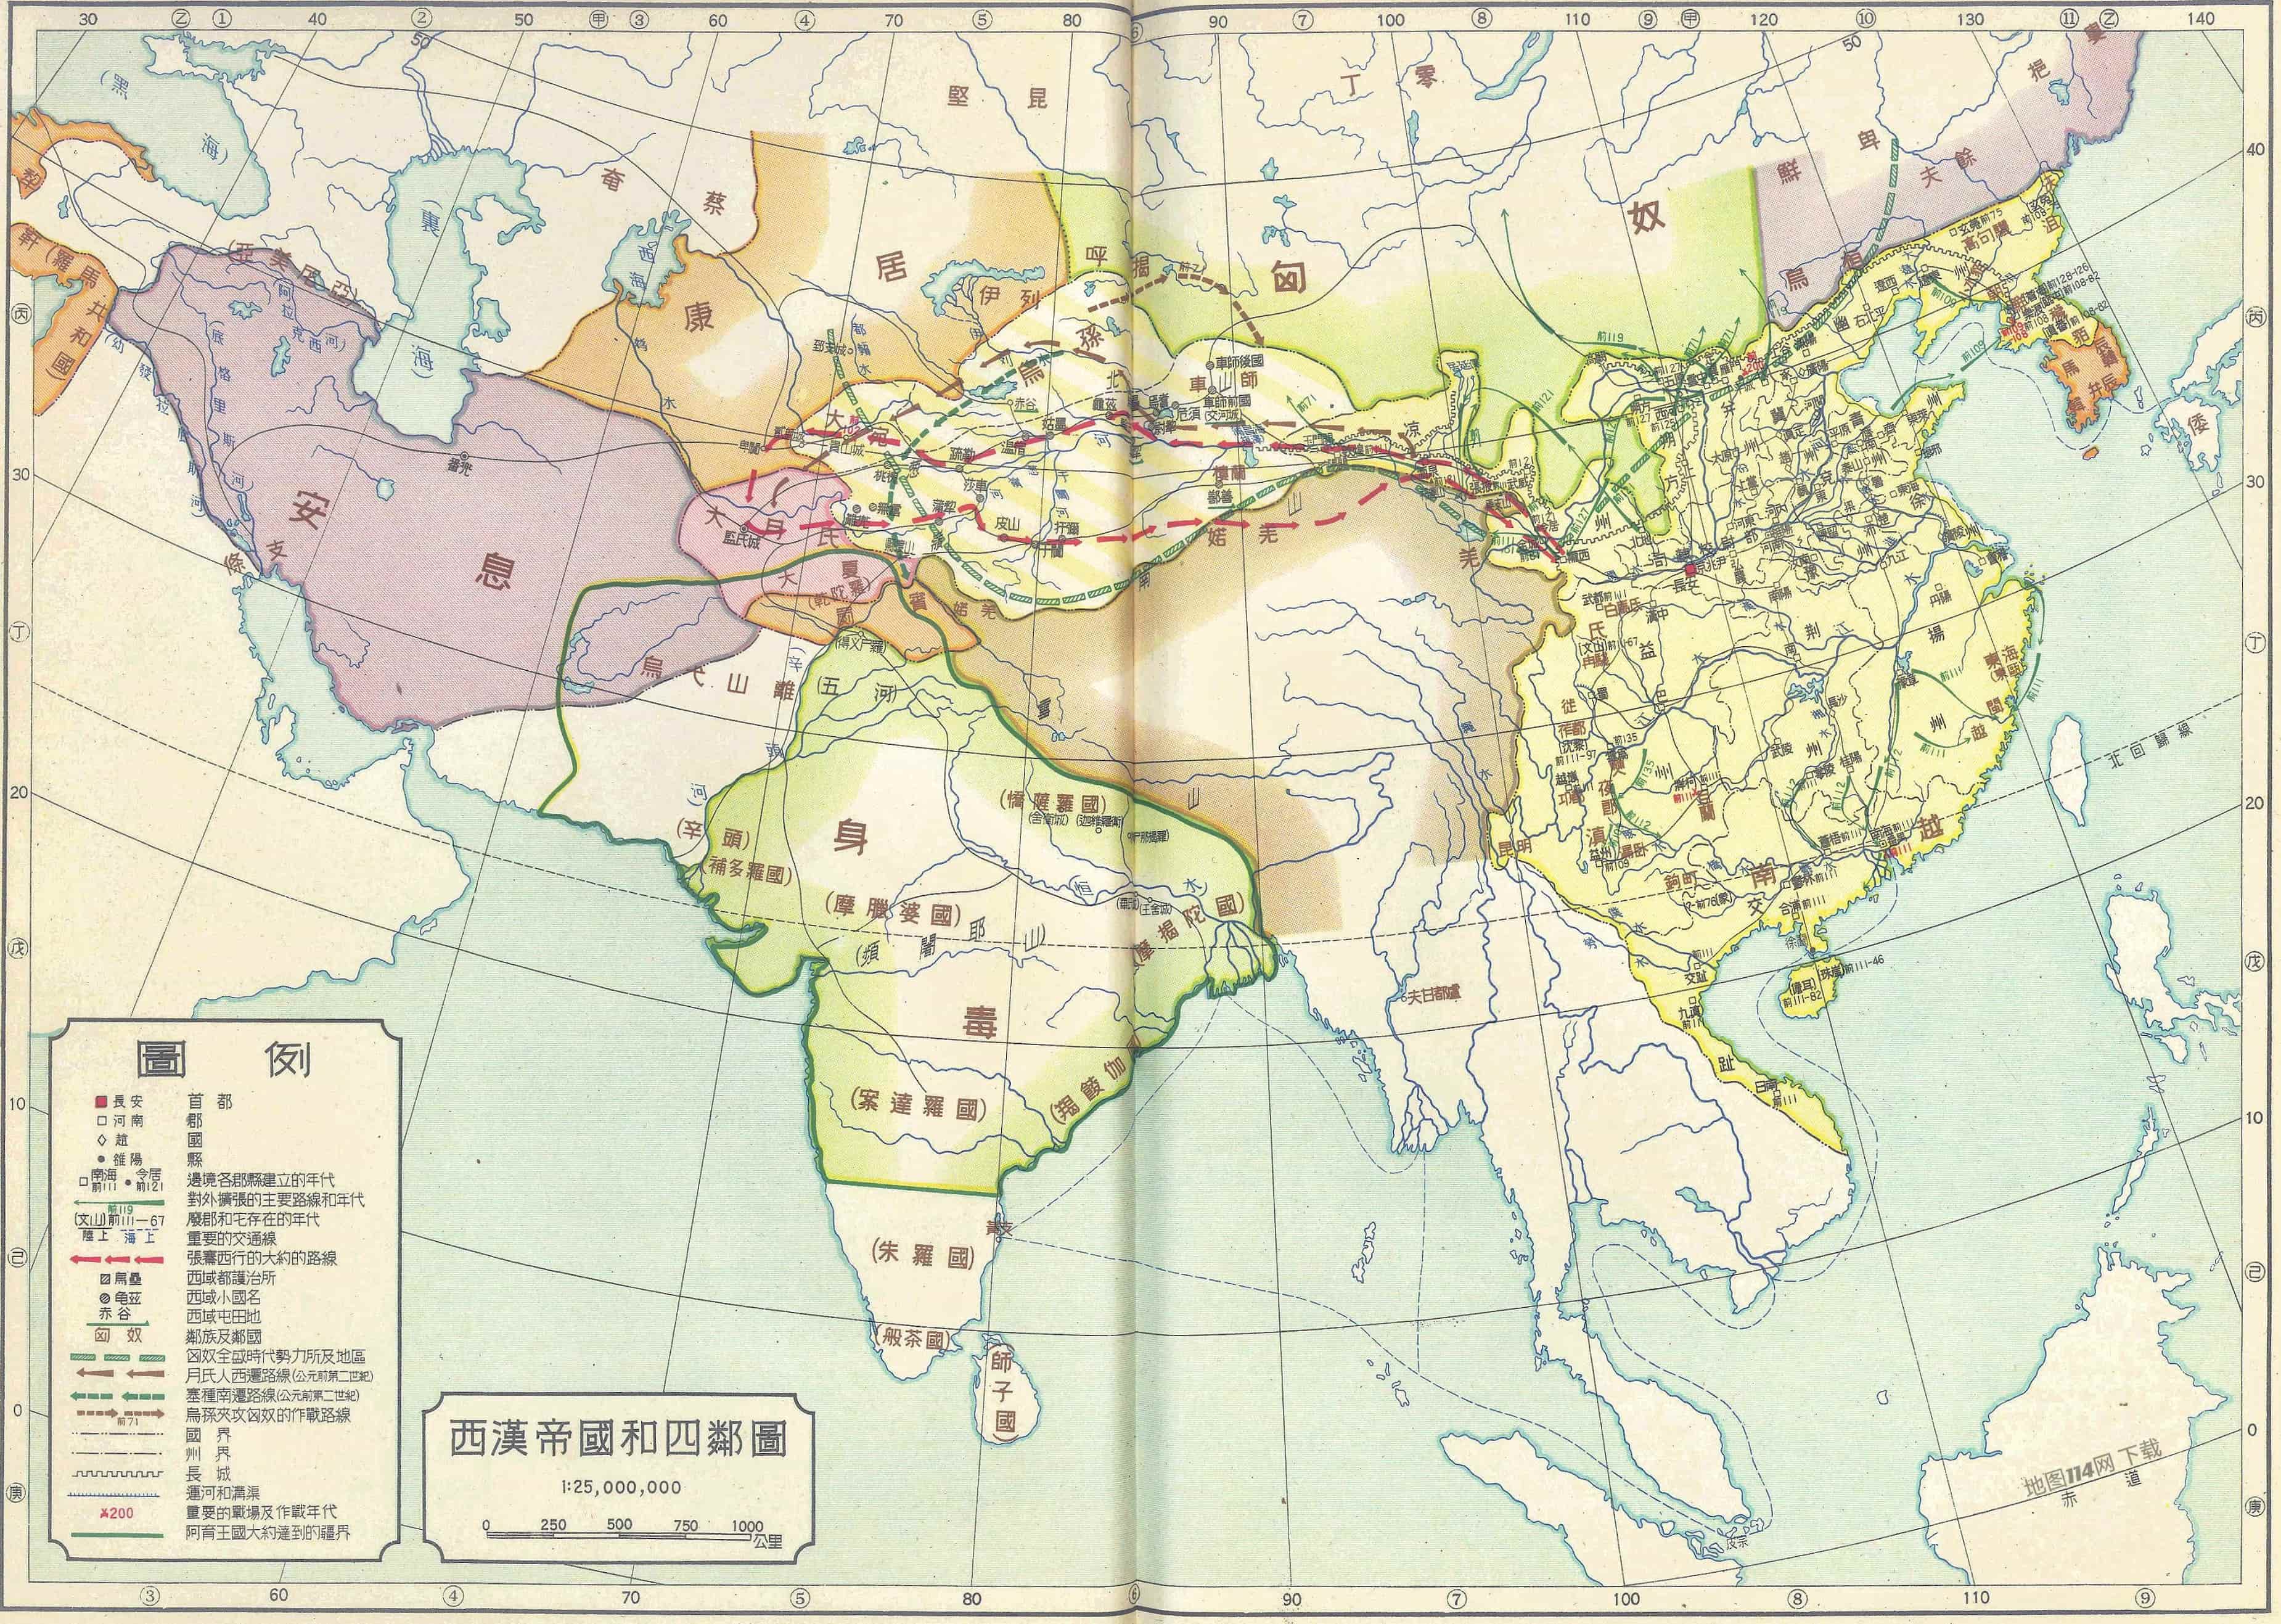 《顾颉刚中国历史地图》之西汉帝国和四邻图.jpg